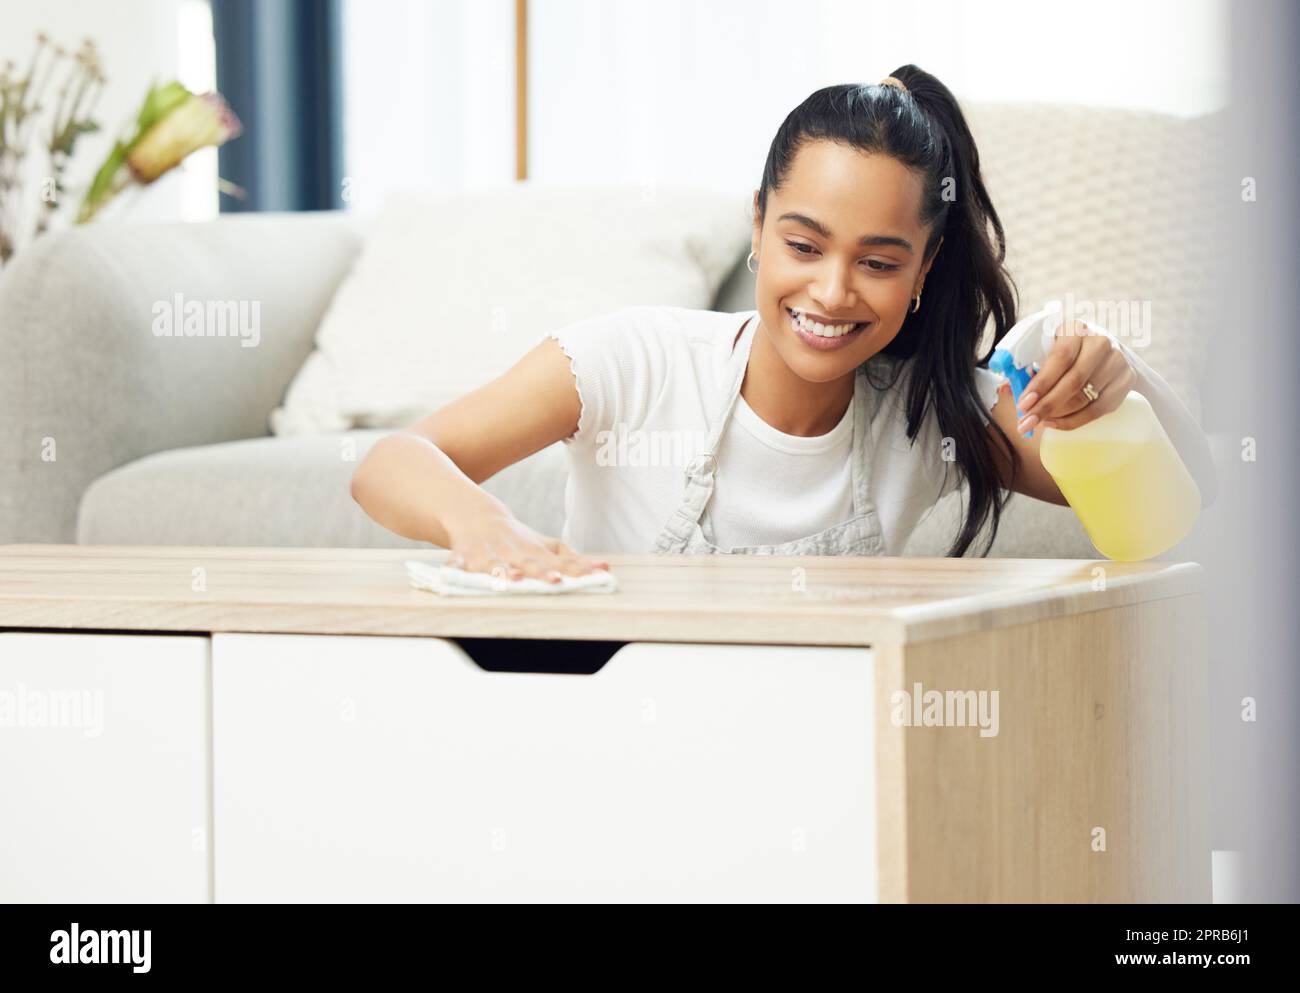 Désinfectez les surfaces vérifiées. Une jeune femme a l'air heureuse en faisant des tâches à la maison. Banque D'Images